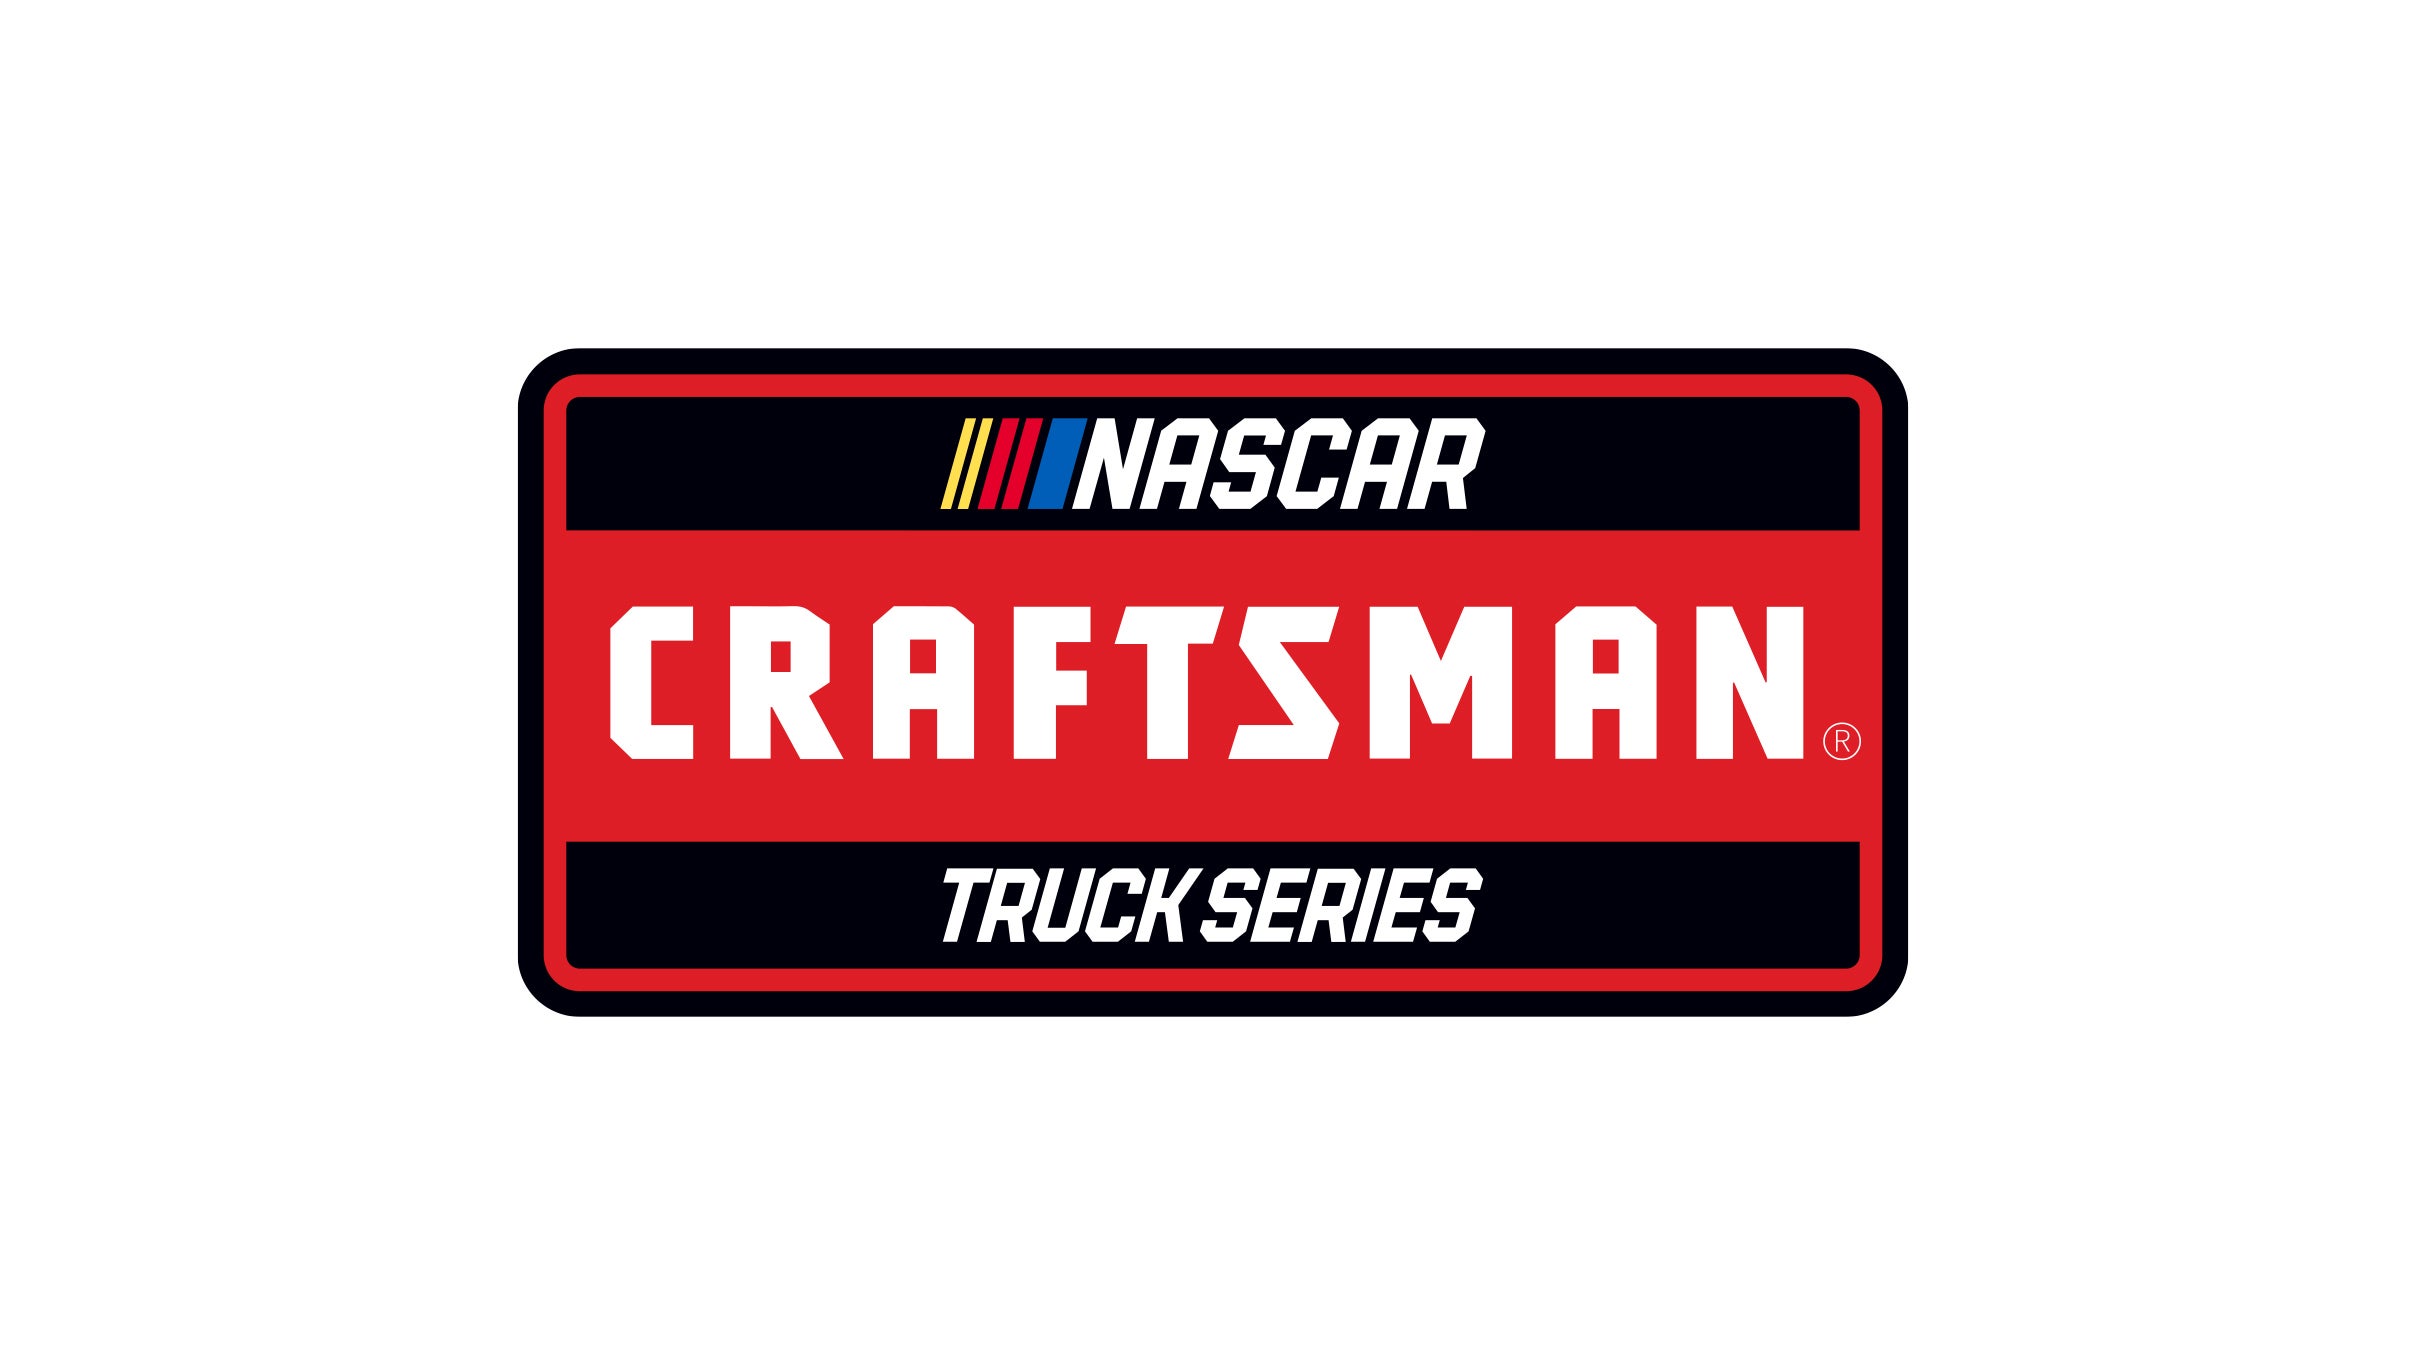 Nascar Craftsman Truck Series at Martinsville Speedway